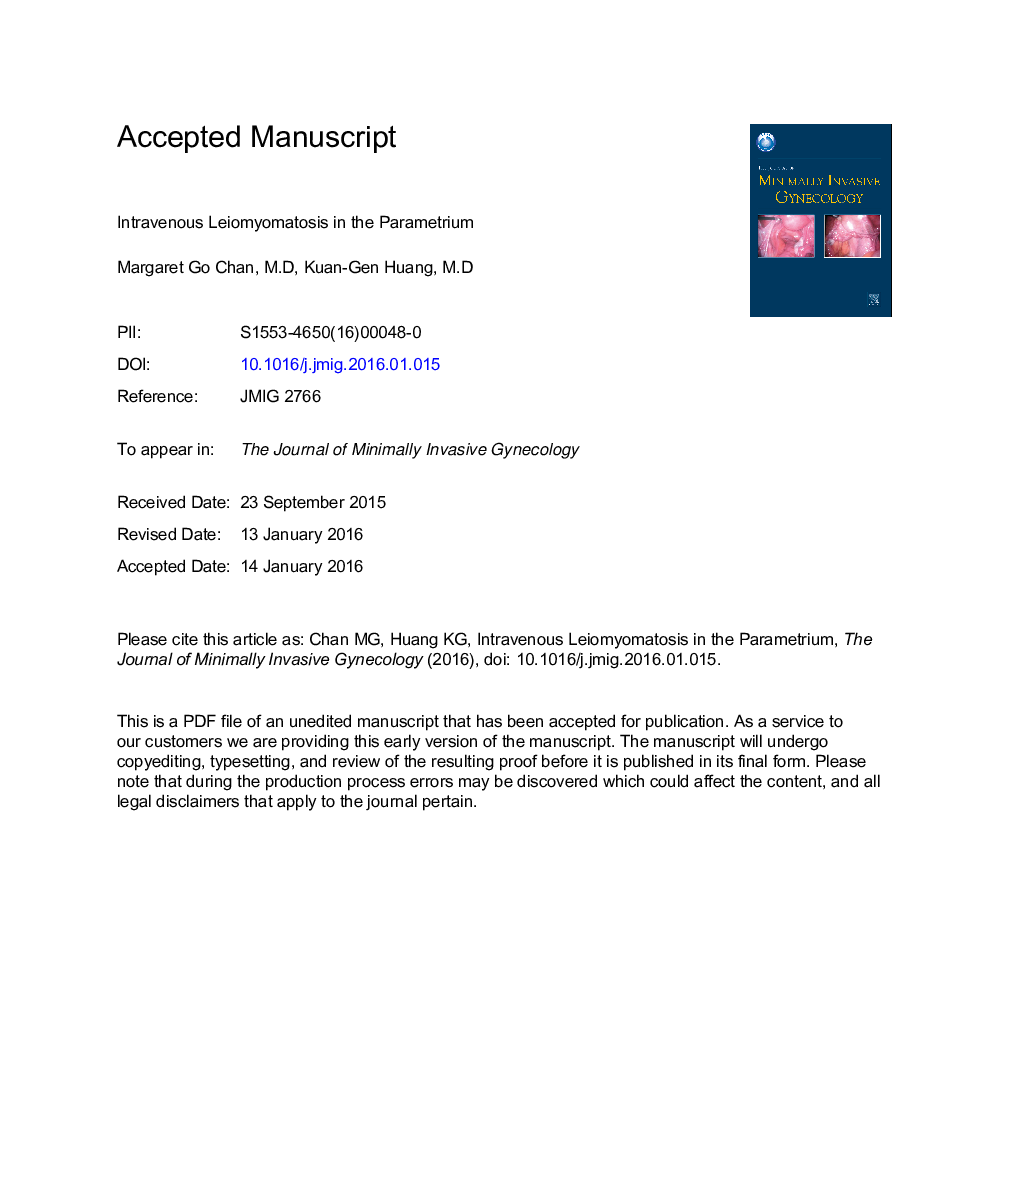 Intravenous Leiomyomatosis in the Parametrium